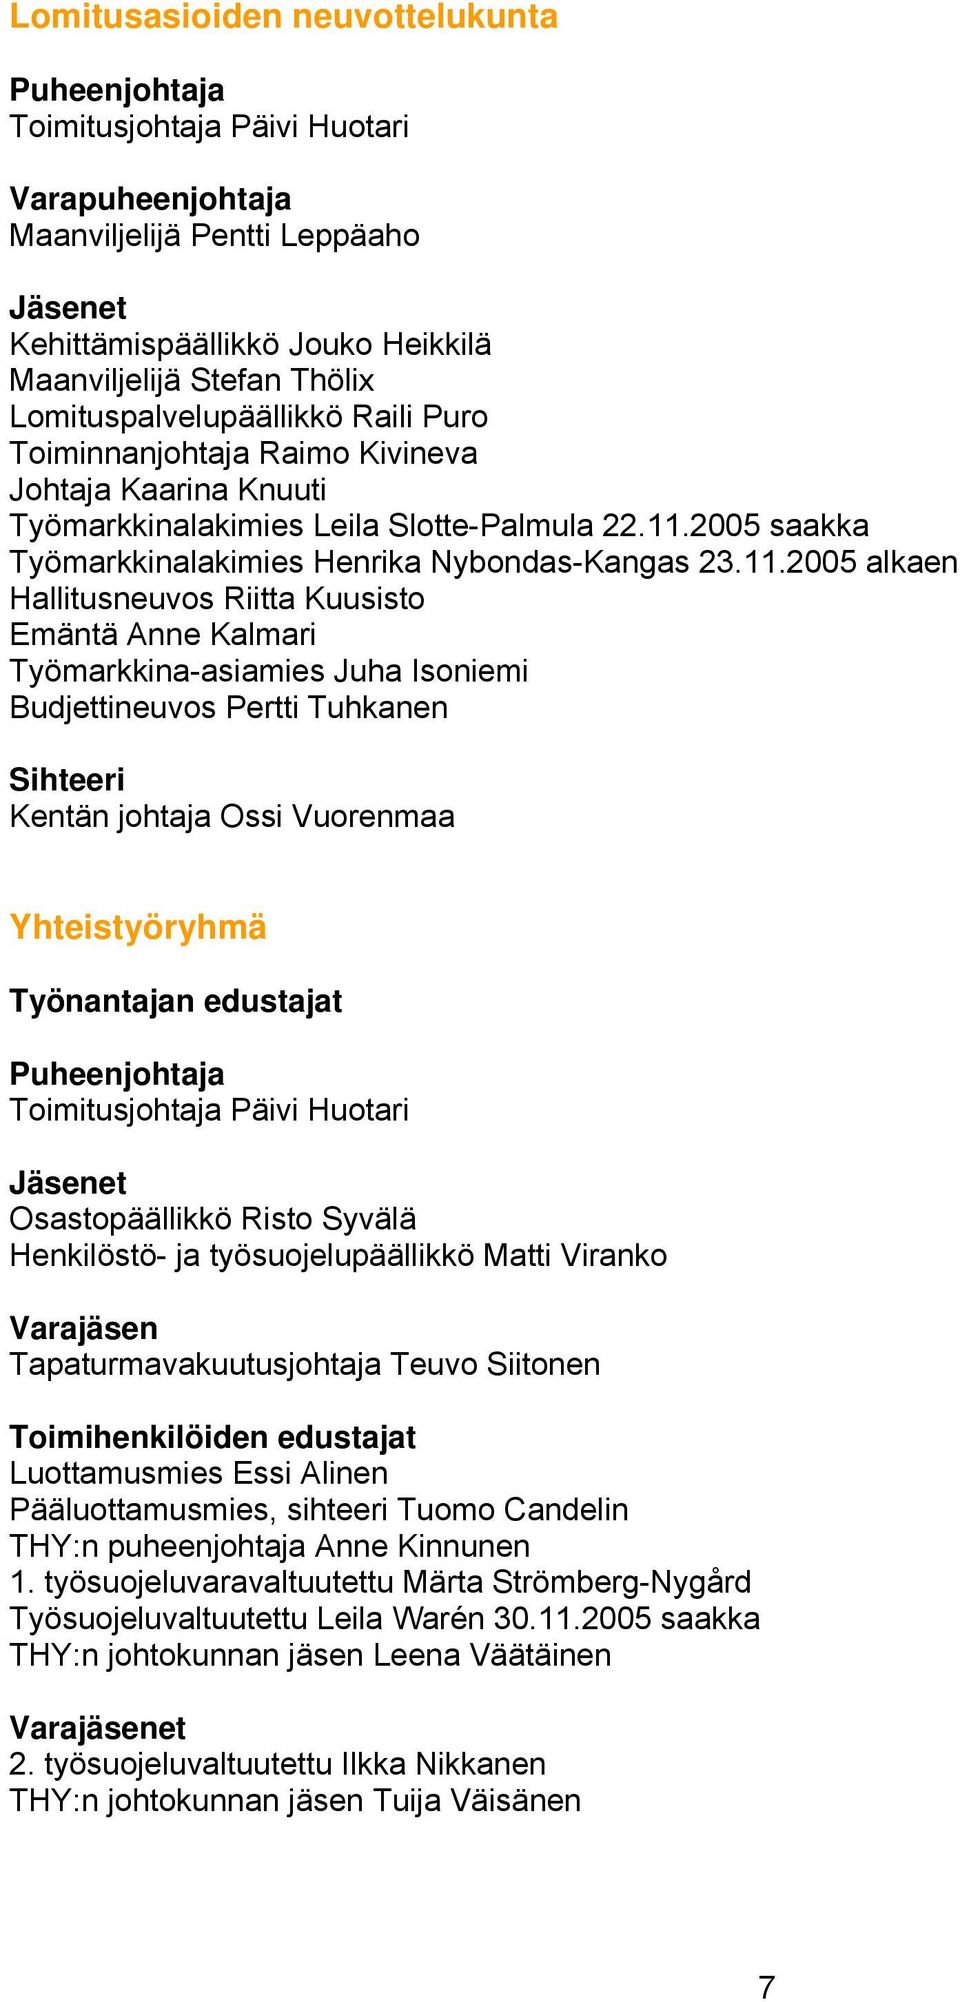 2005 saakka Työmarkkinalakimies Henrika Nybondas-Kangas 23.11.